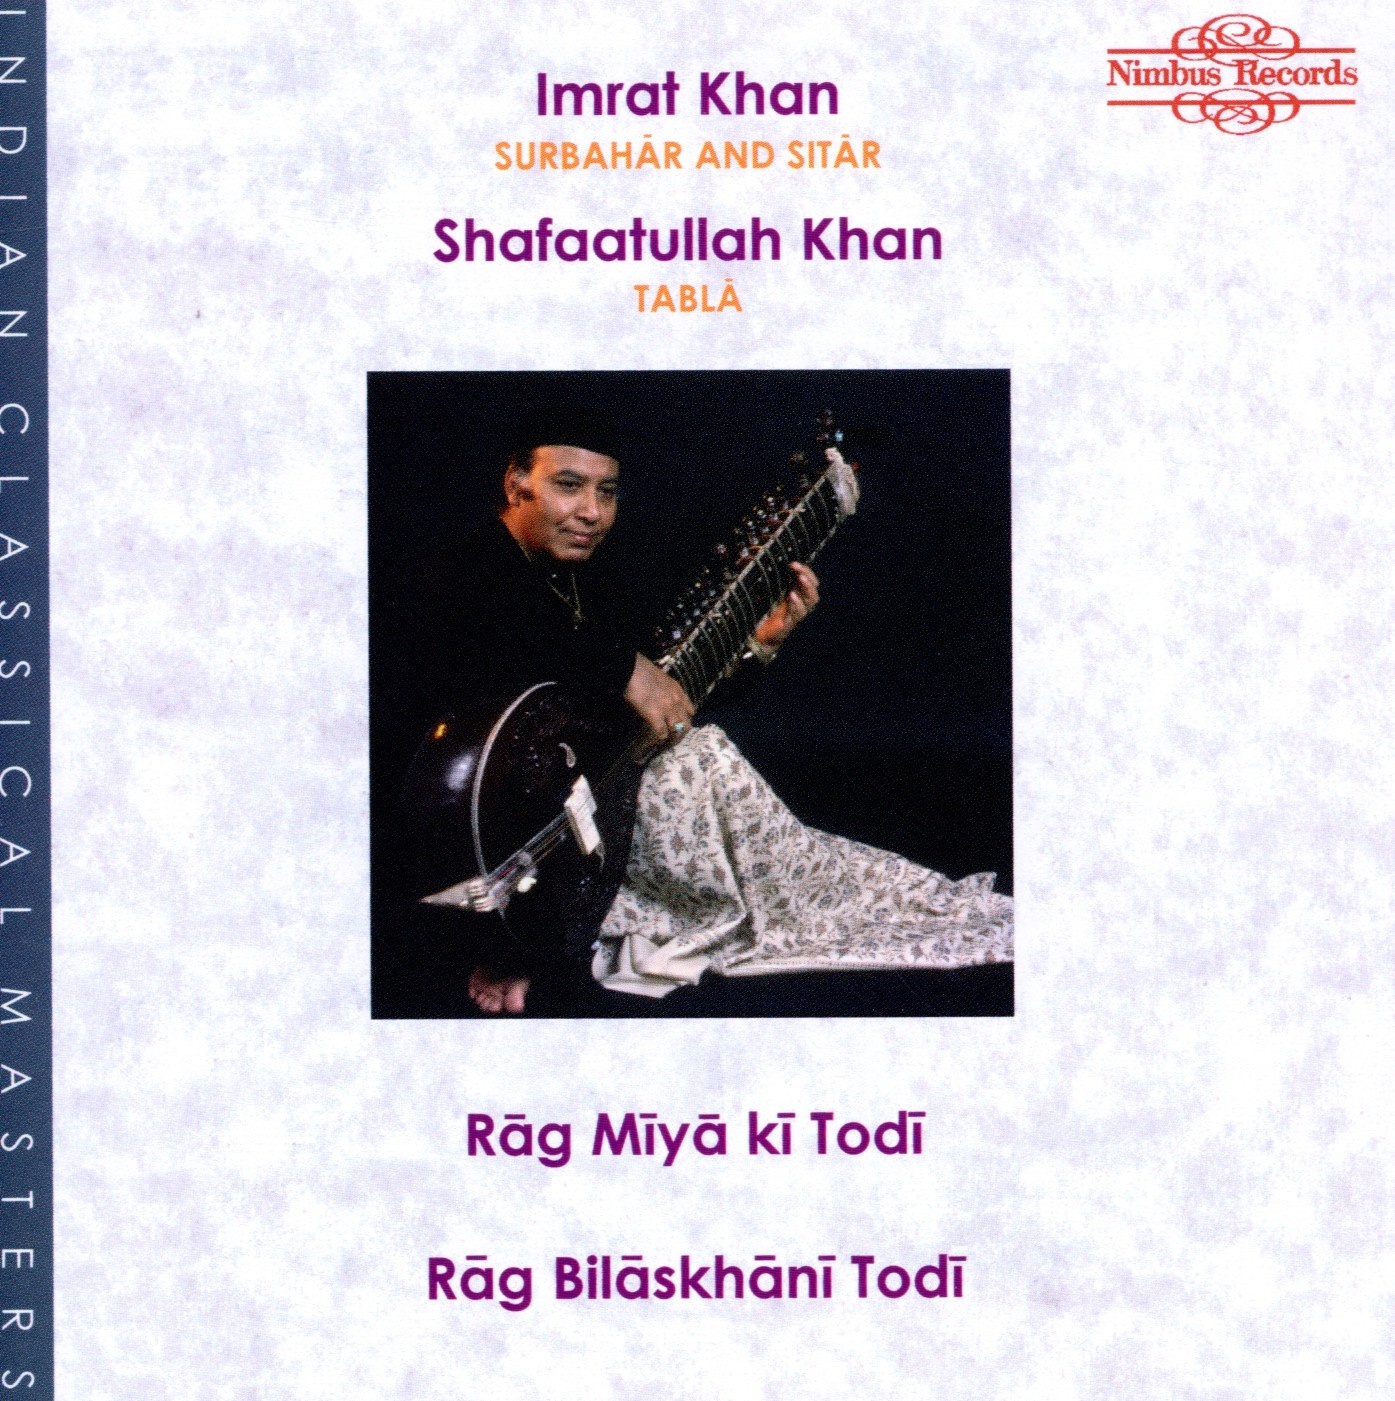 Rag Miya Ki Todi/Rag Bilaskhan - Imrat Khan  Vajaha Shafaatullah. (CD)